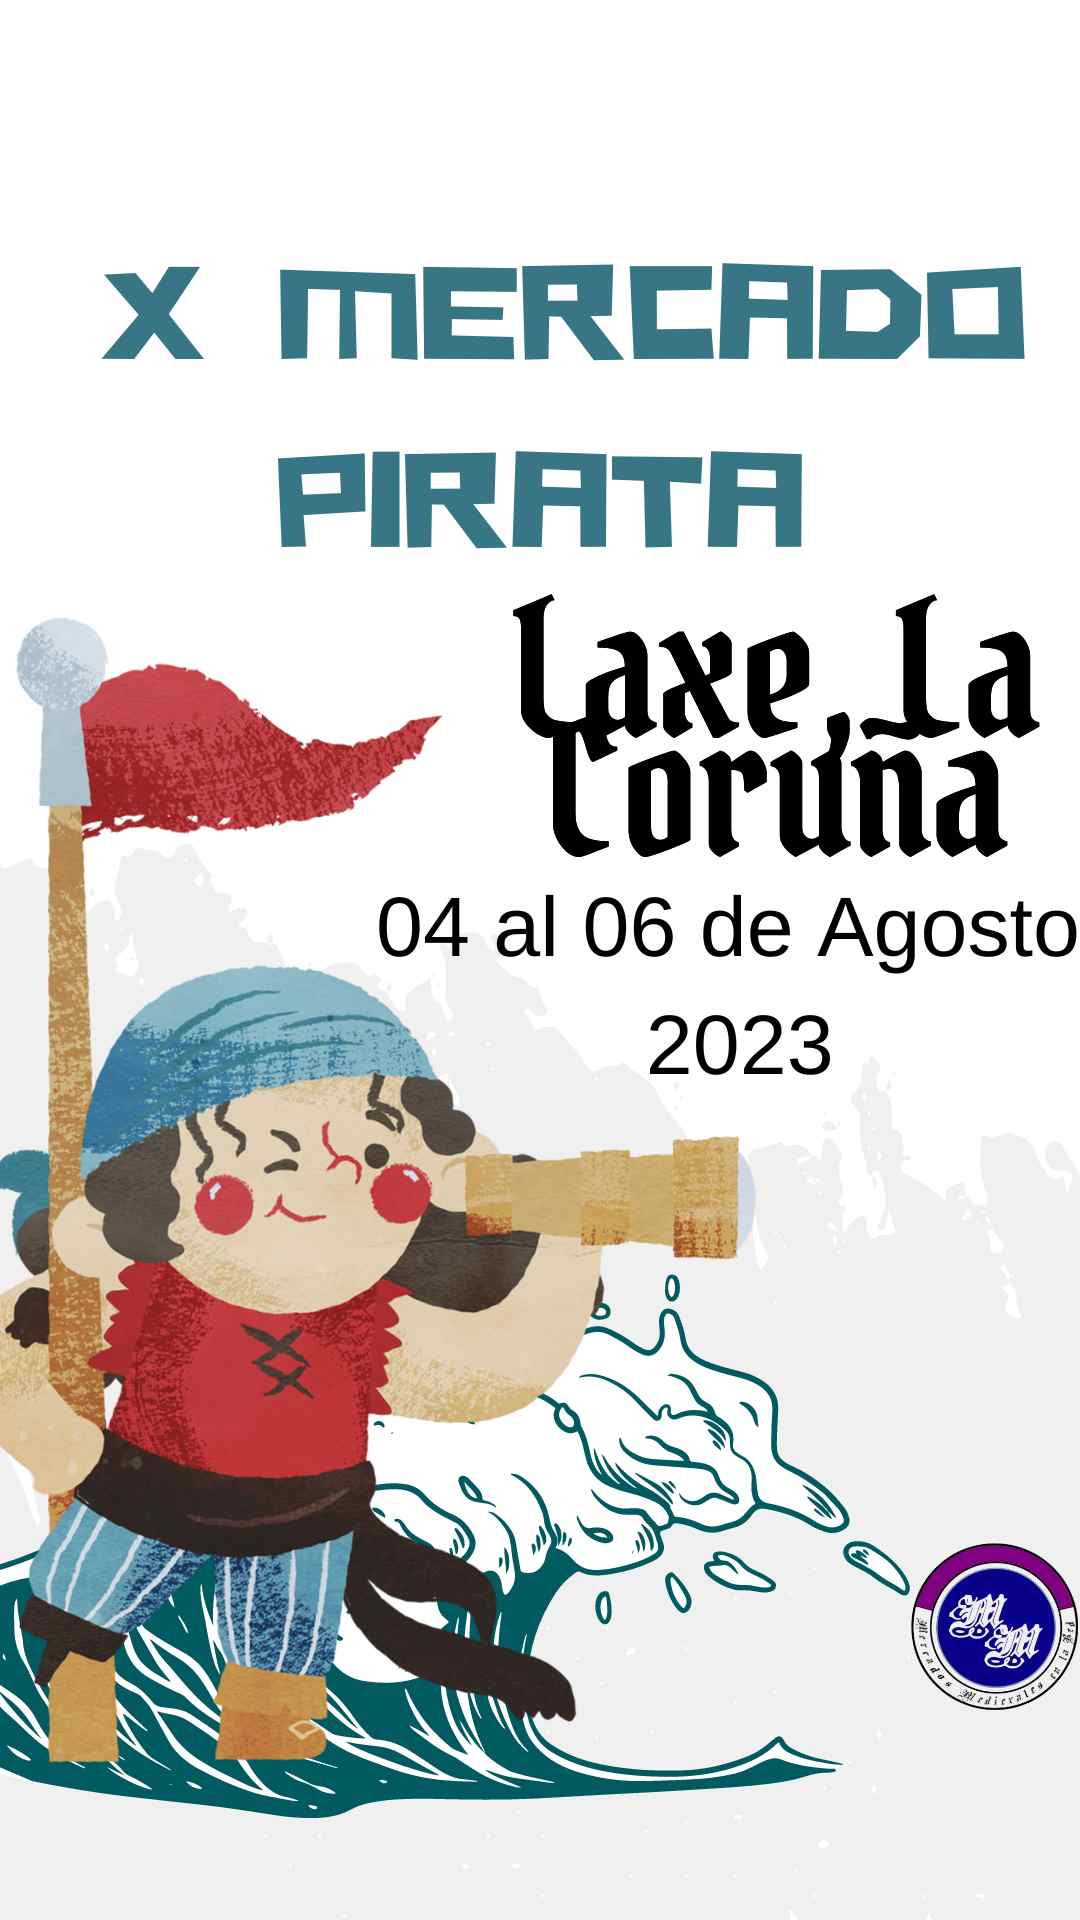 Mercado pirata en Laxe , La Coruña del 04 al 06 de Agosto 2023